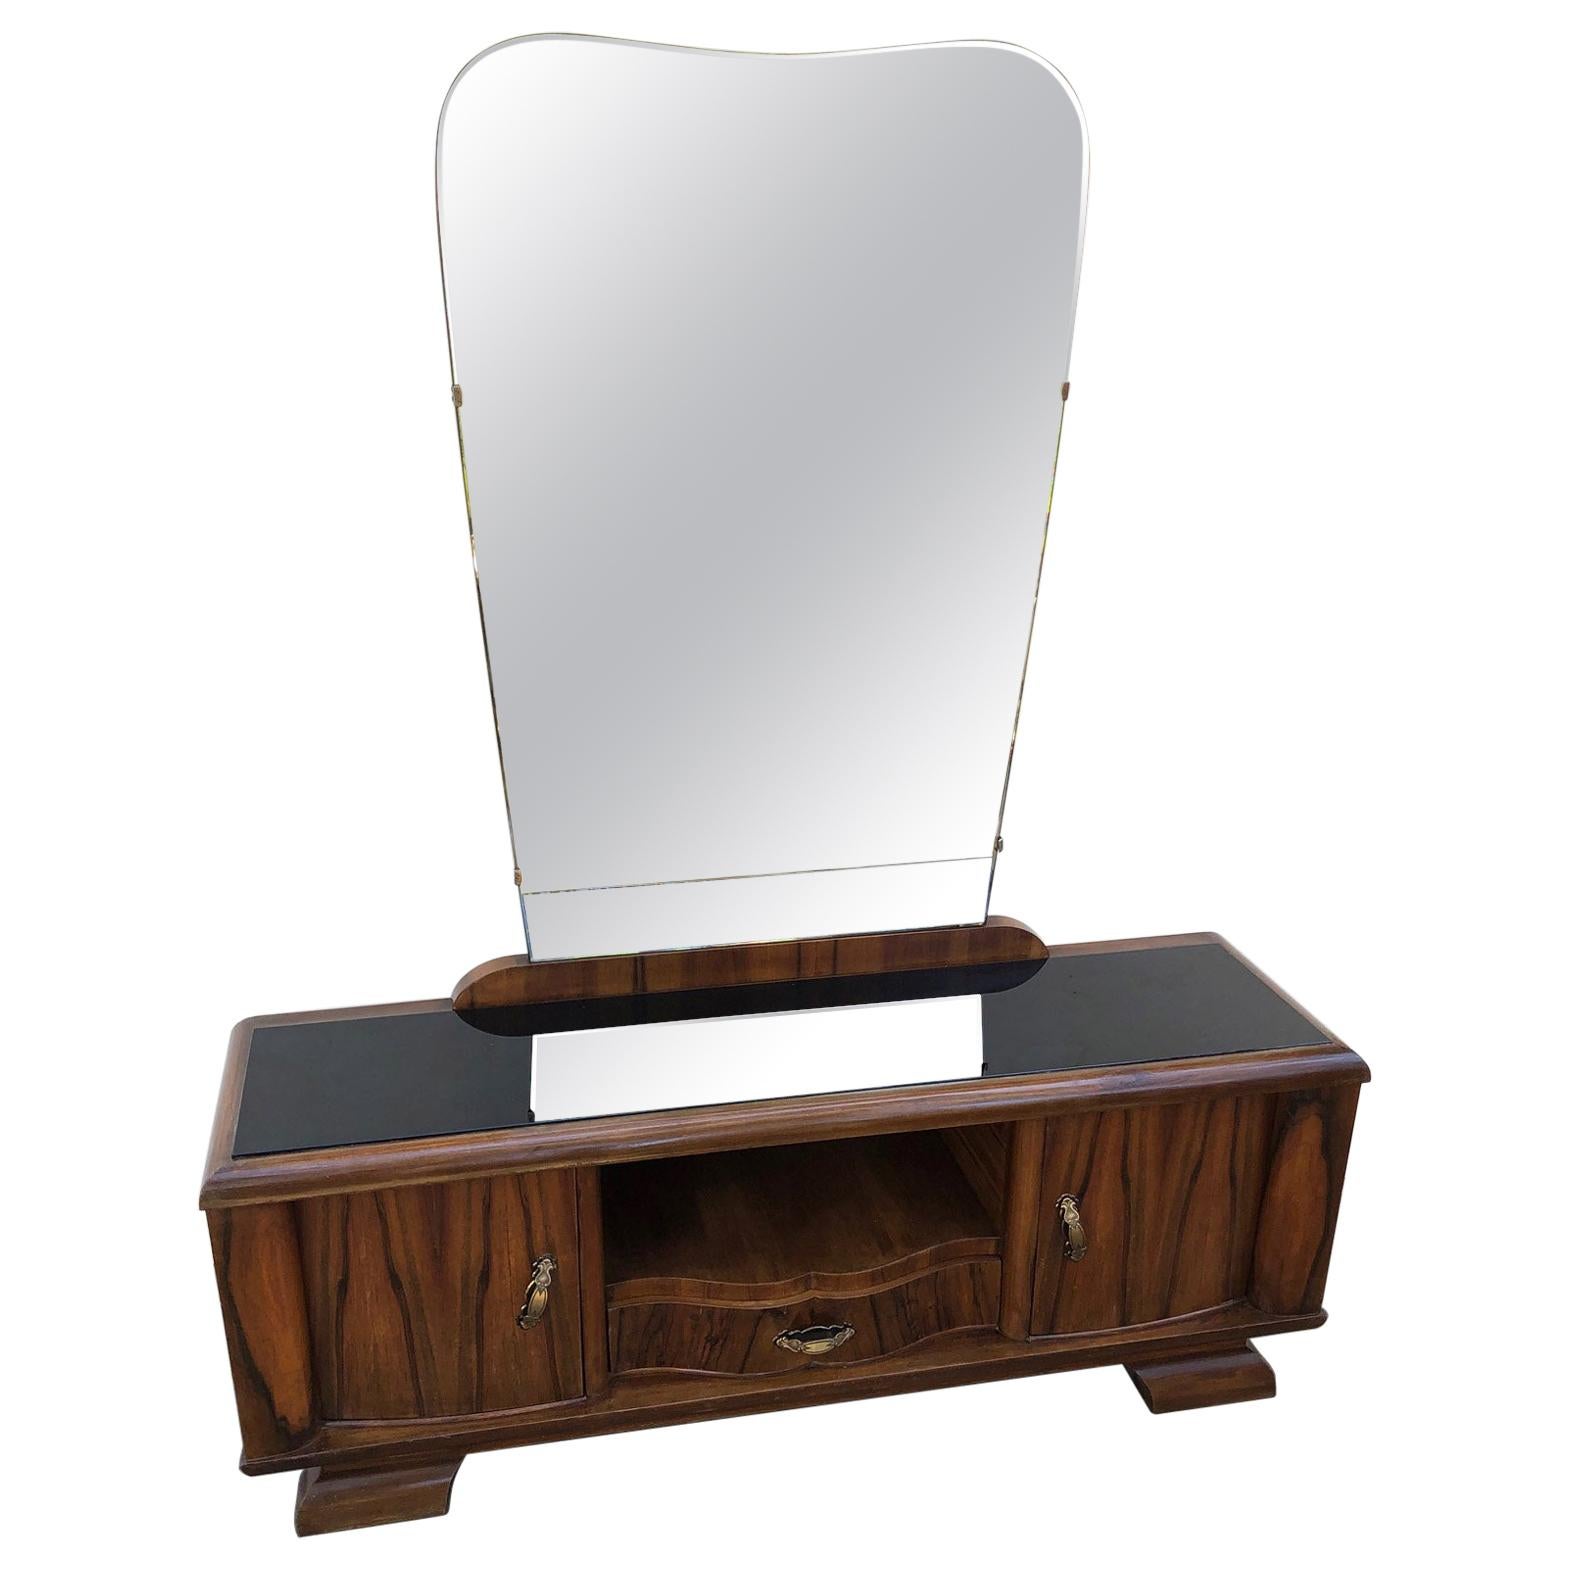 Sideboard-Spiegel in Wabenform aus Rosenholz und Nussbaumholz, italienisches Design, 1940er Jahre